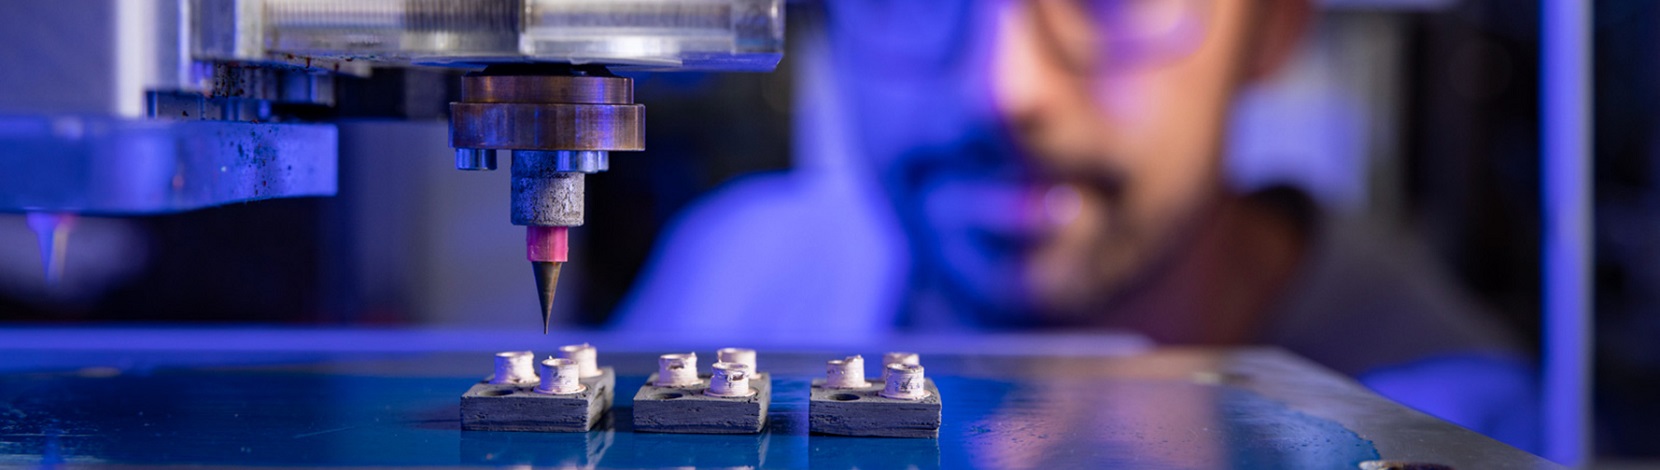 Des semi-conducteurs de puissance imprimés en 3D résistants aux températures élevées – Electrosuisse